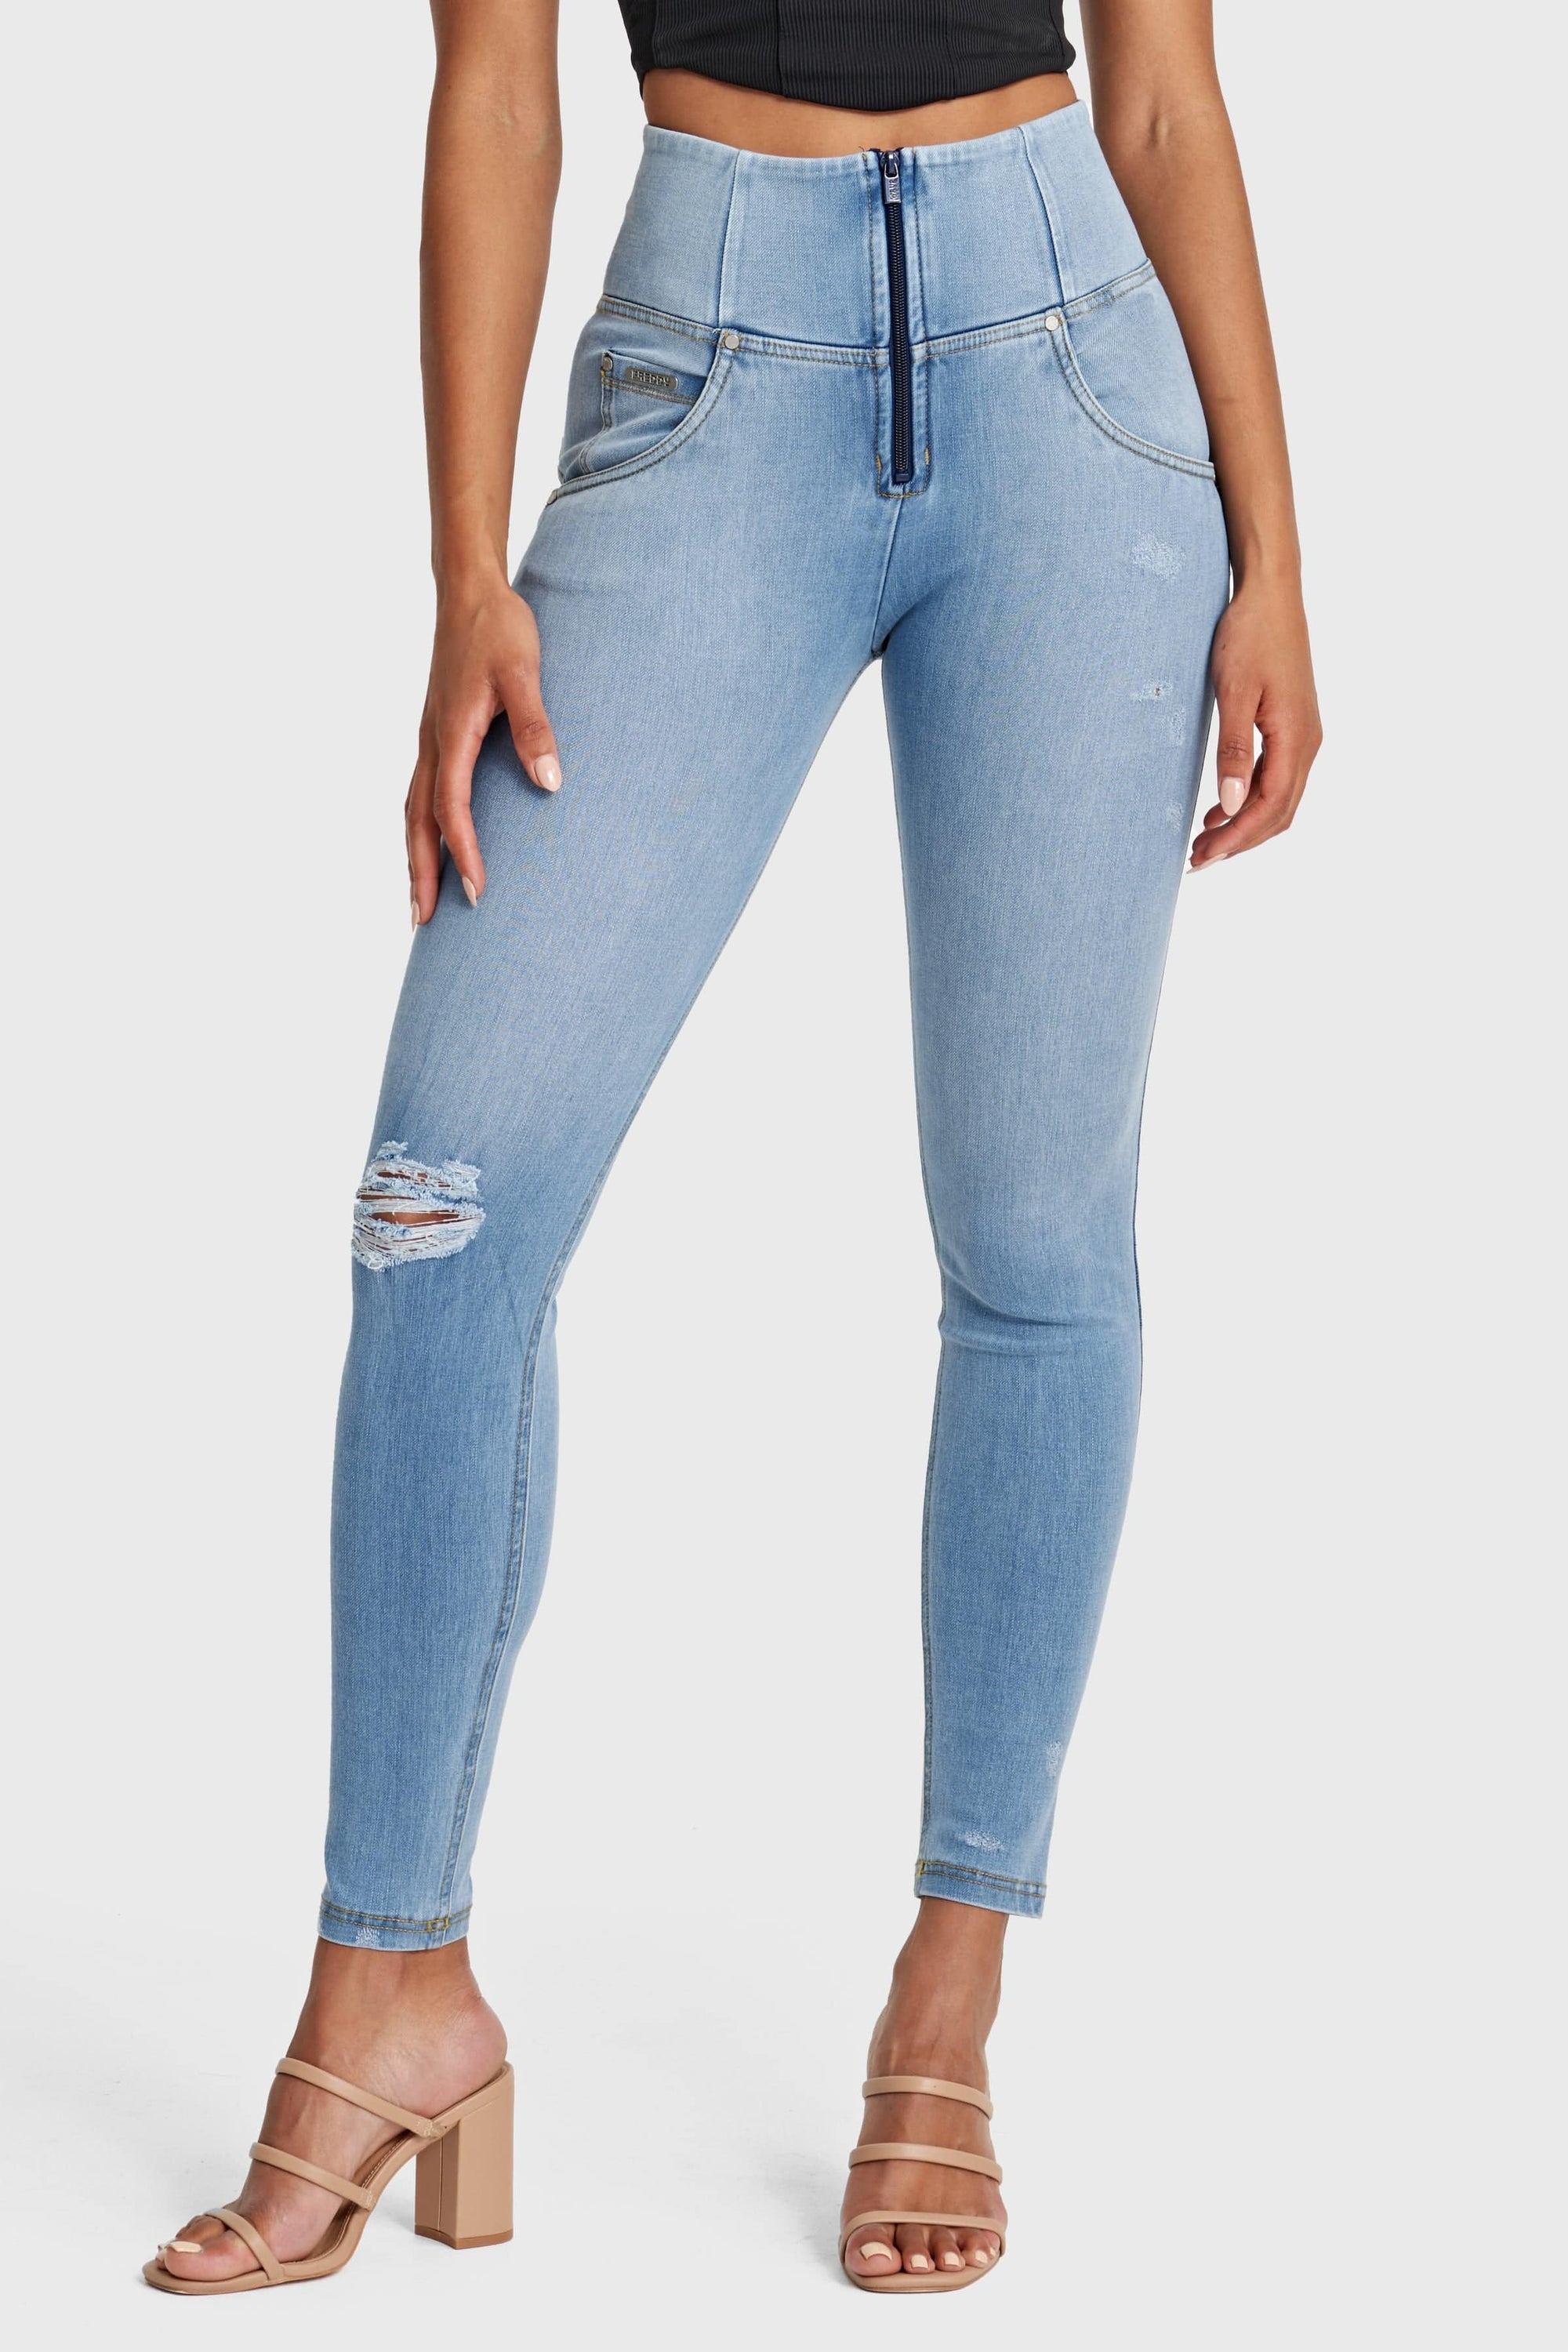 Jeans desgastados WR.UP® Snug - Cintura alta - Largo completo - Azul claro + Costuras amarillas  3